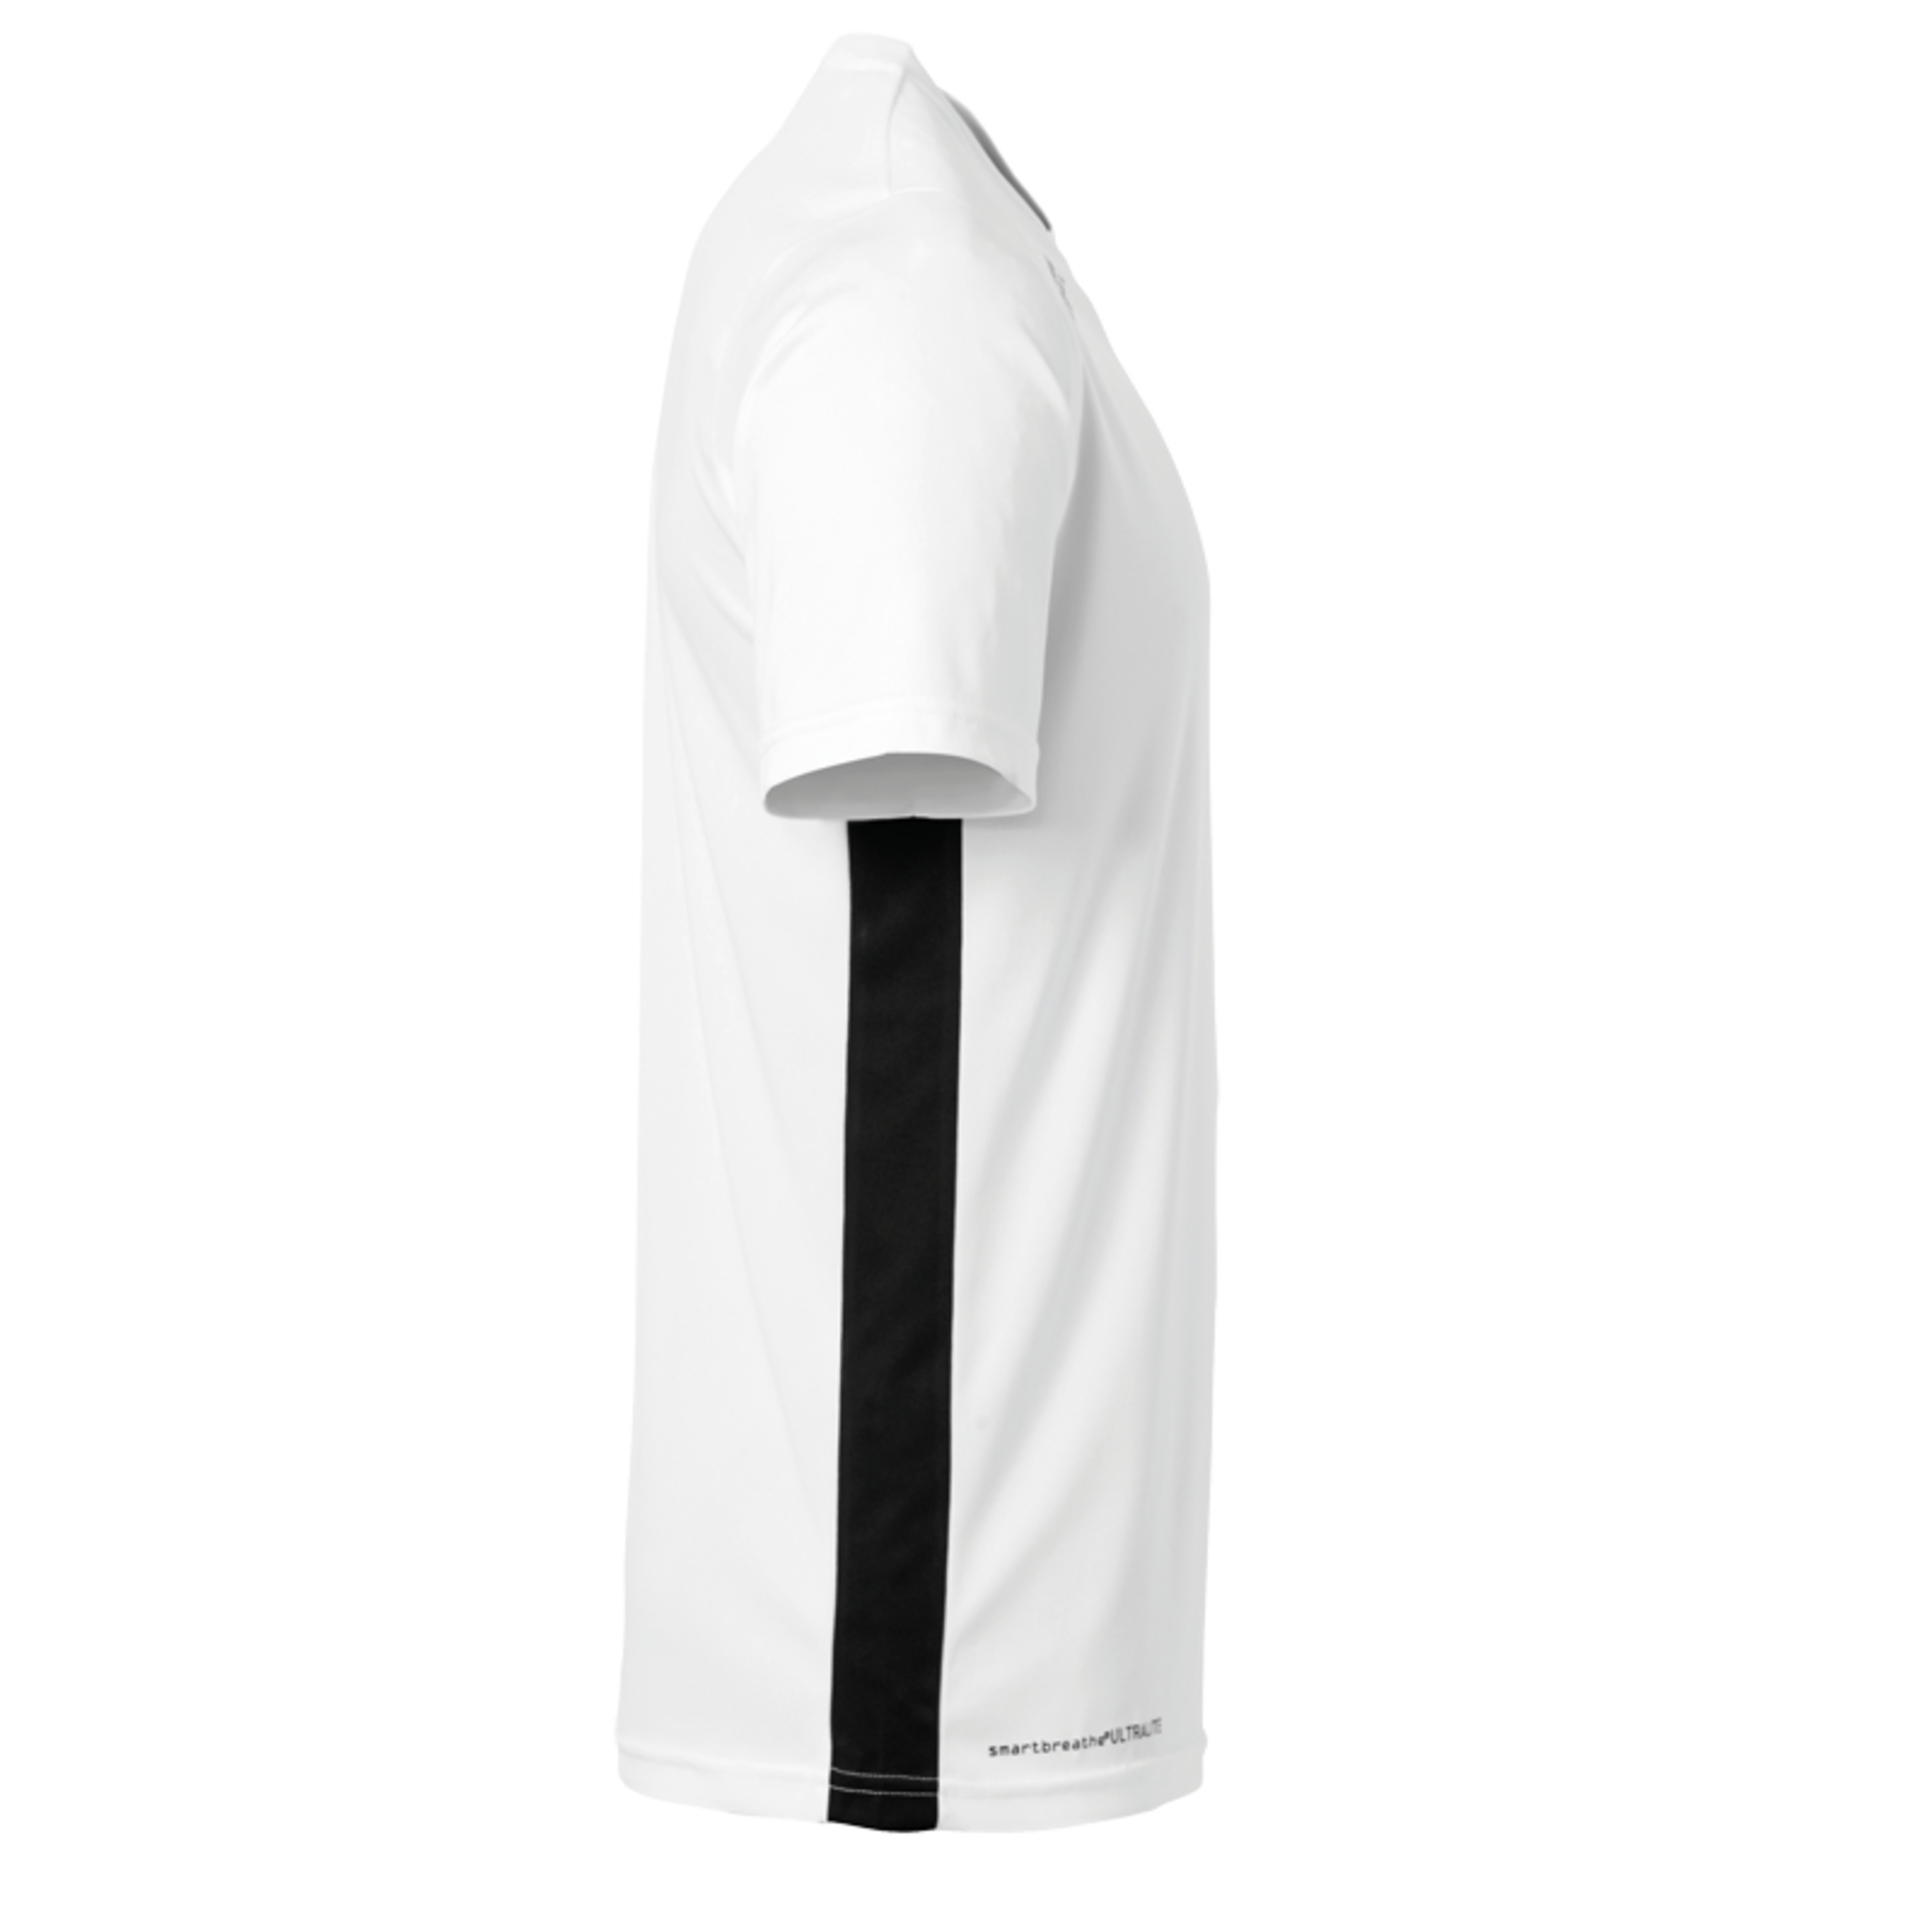 Essential Camiseta Mc Blanco/negro Uhlsport